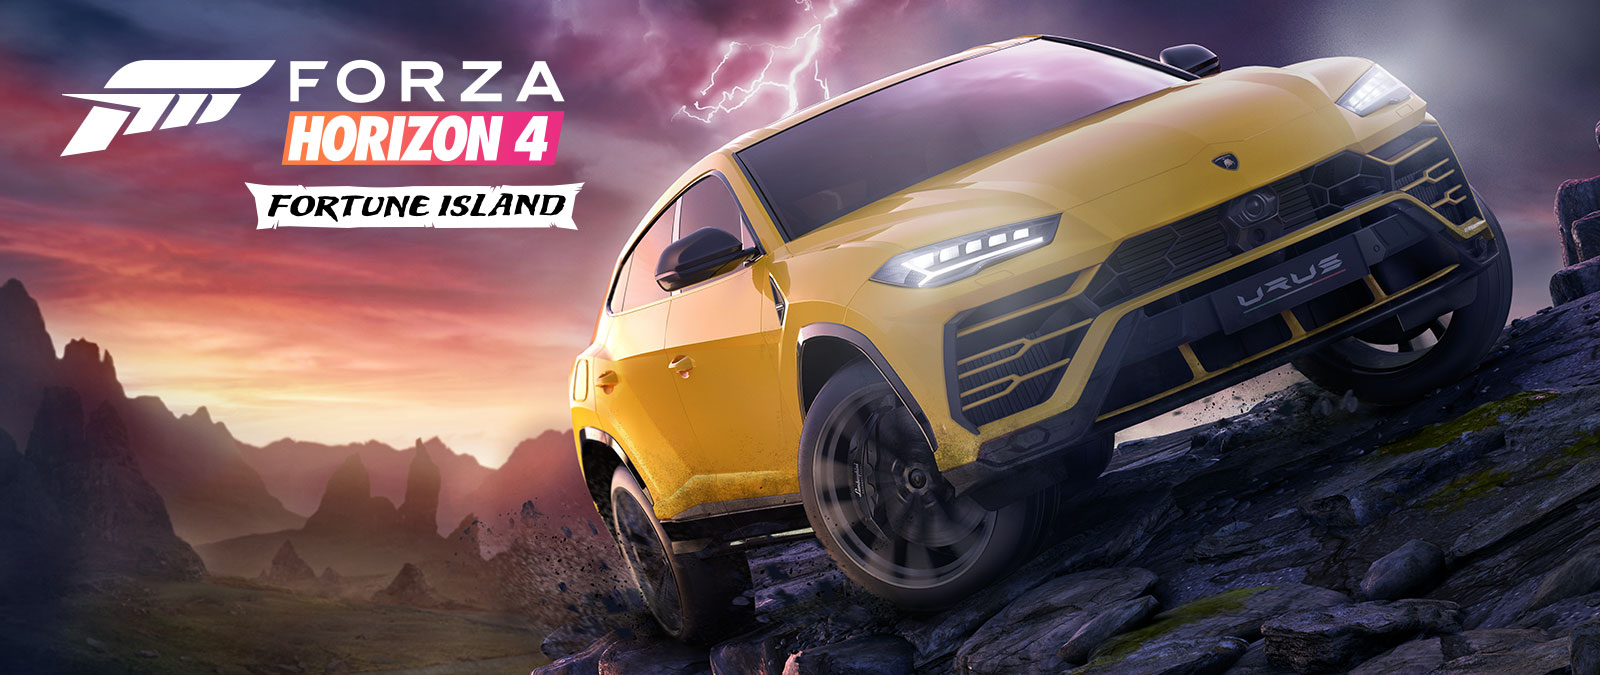 Forza Horizon 4 Fortune Island, egy citromsárga Lamborghini Urus kemény terepen halad el, a háttérben villámmal